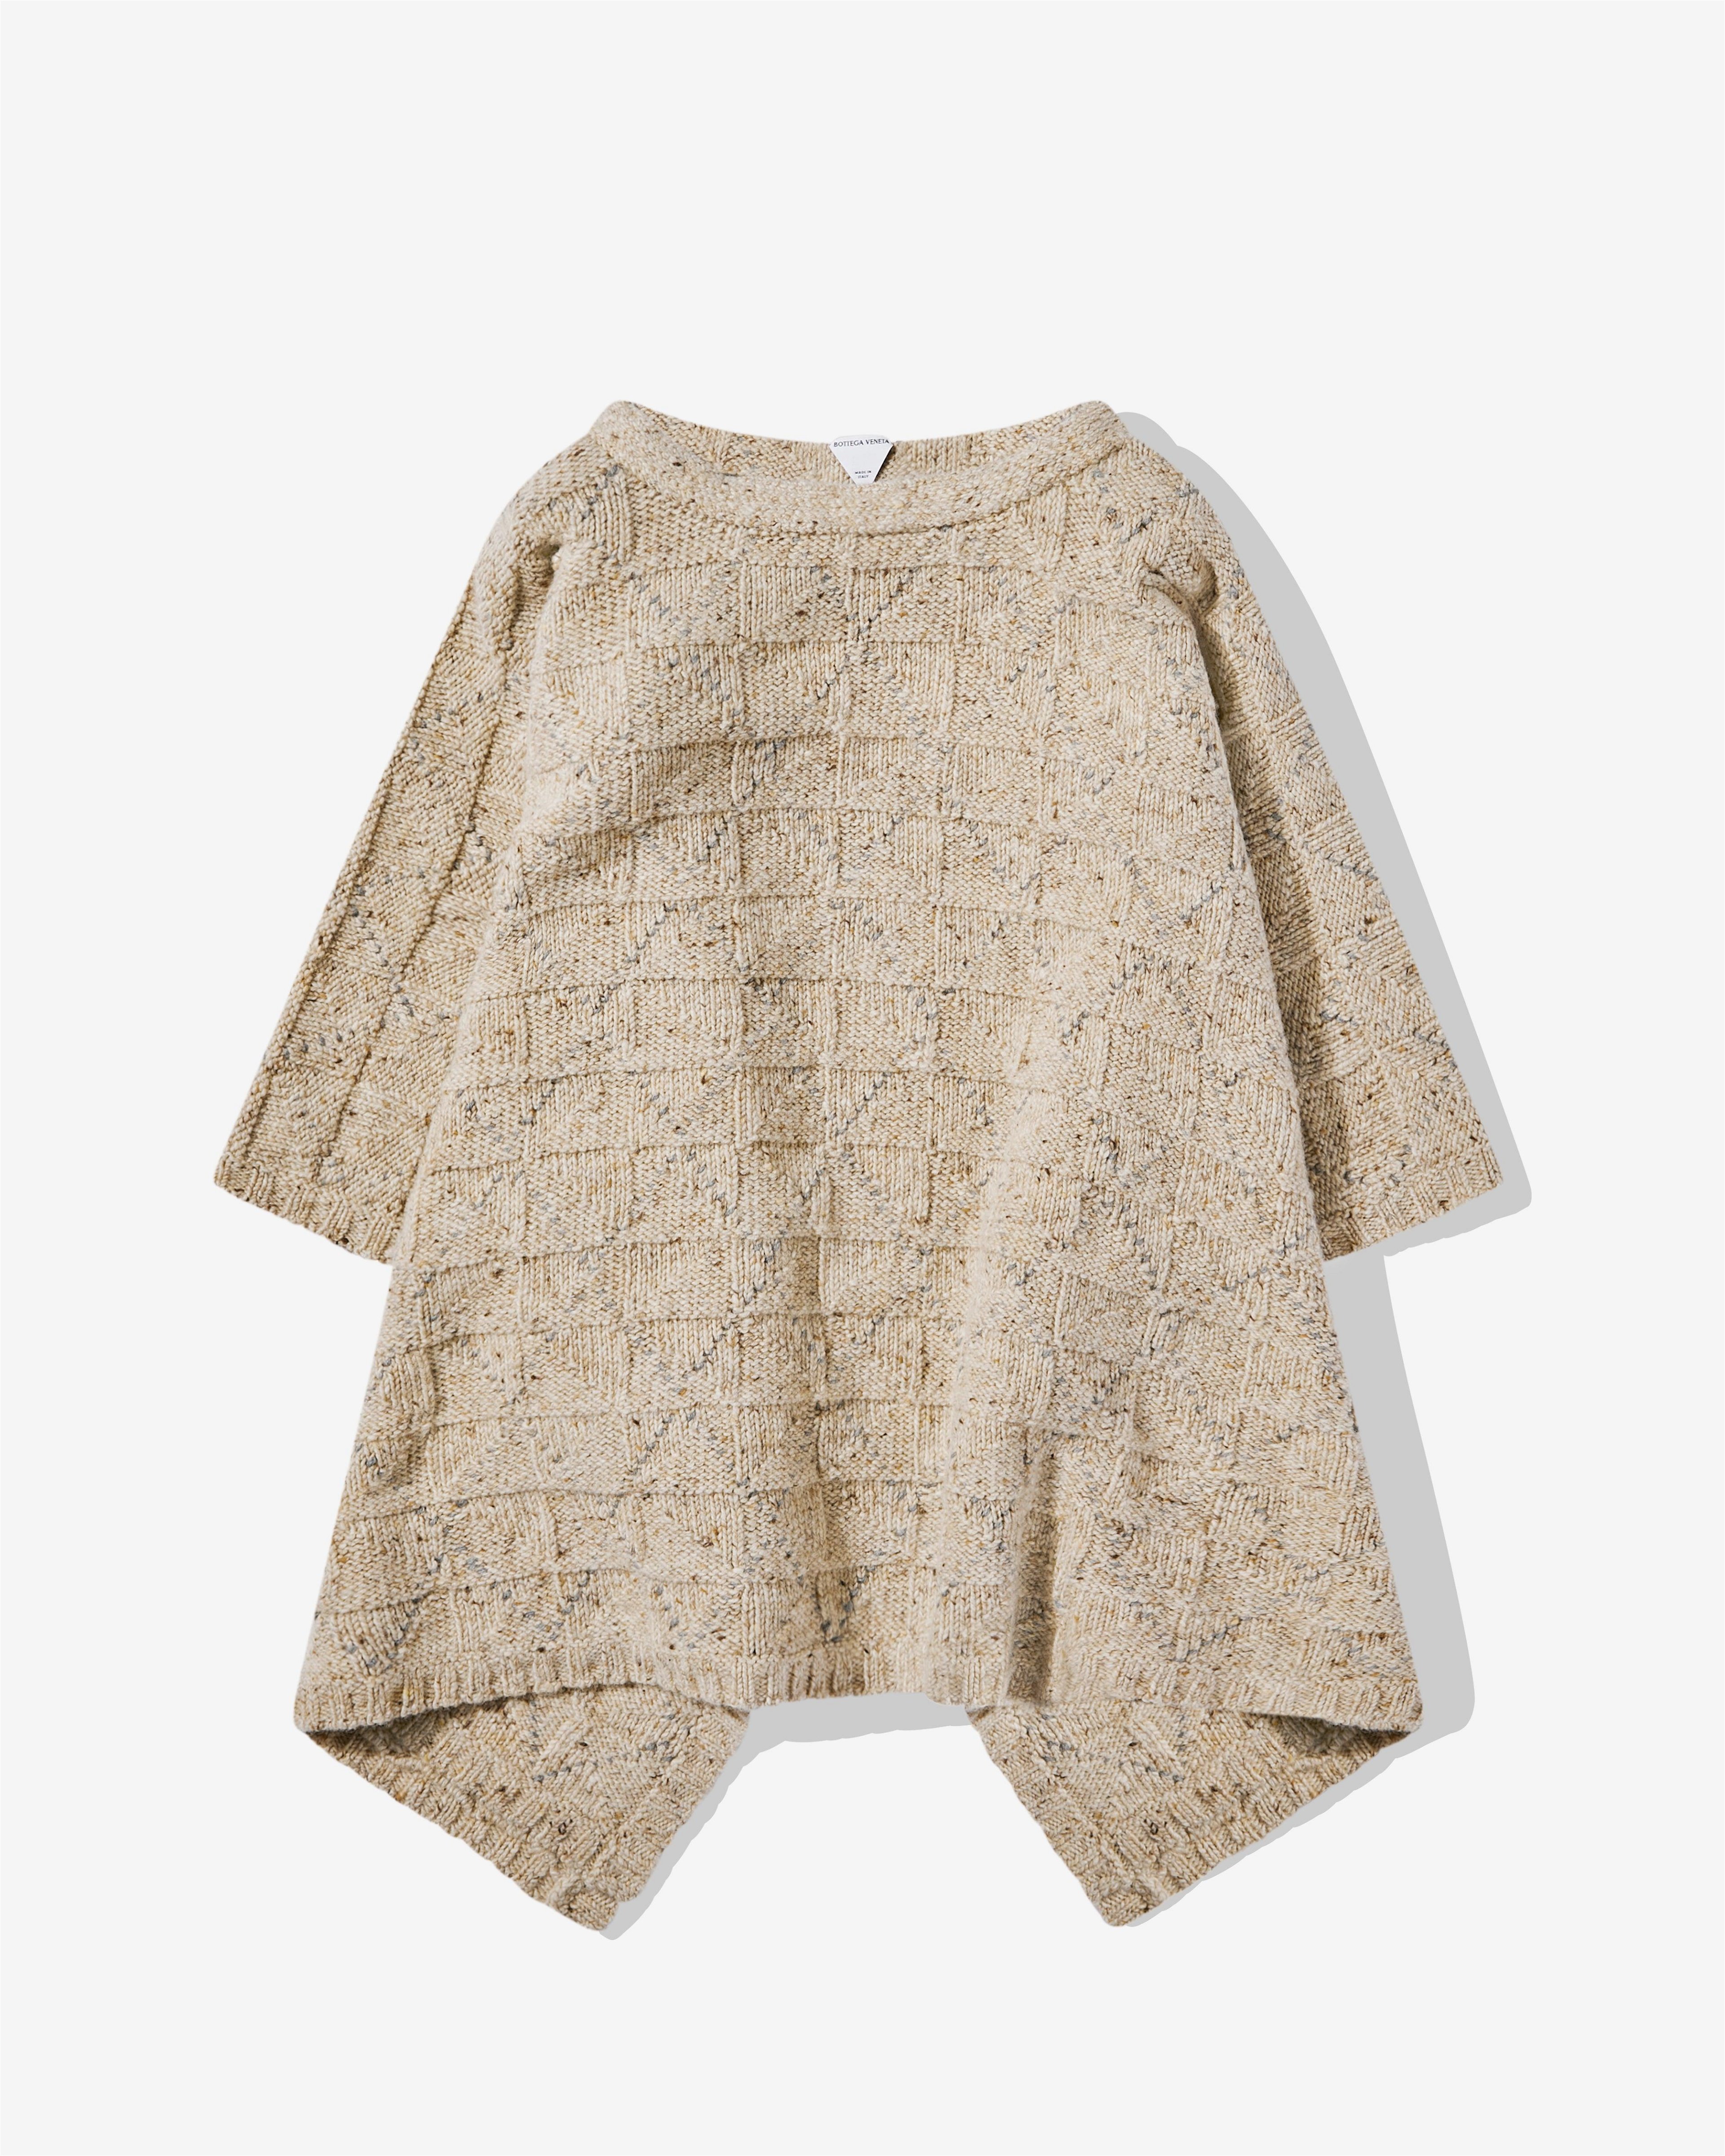 Bottega Veneta - Women's Wool Diamond Skirt - (Dove/ Grey Melange) by BOTTEGA VENETA